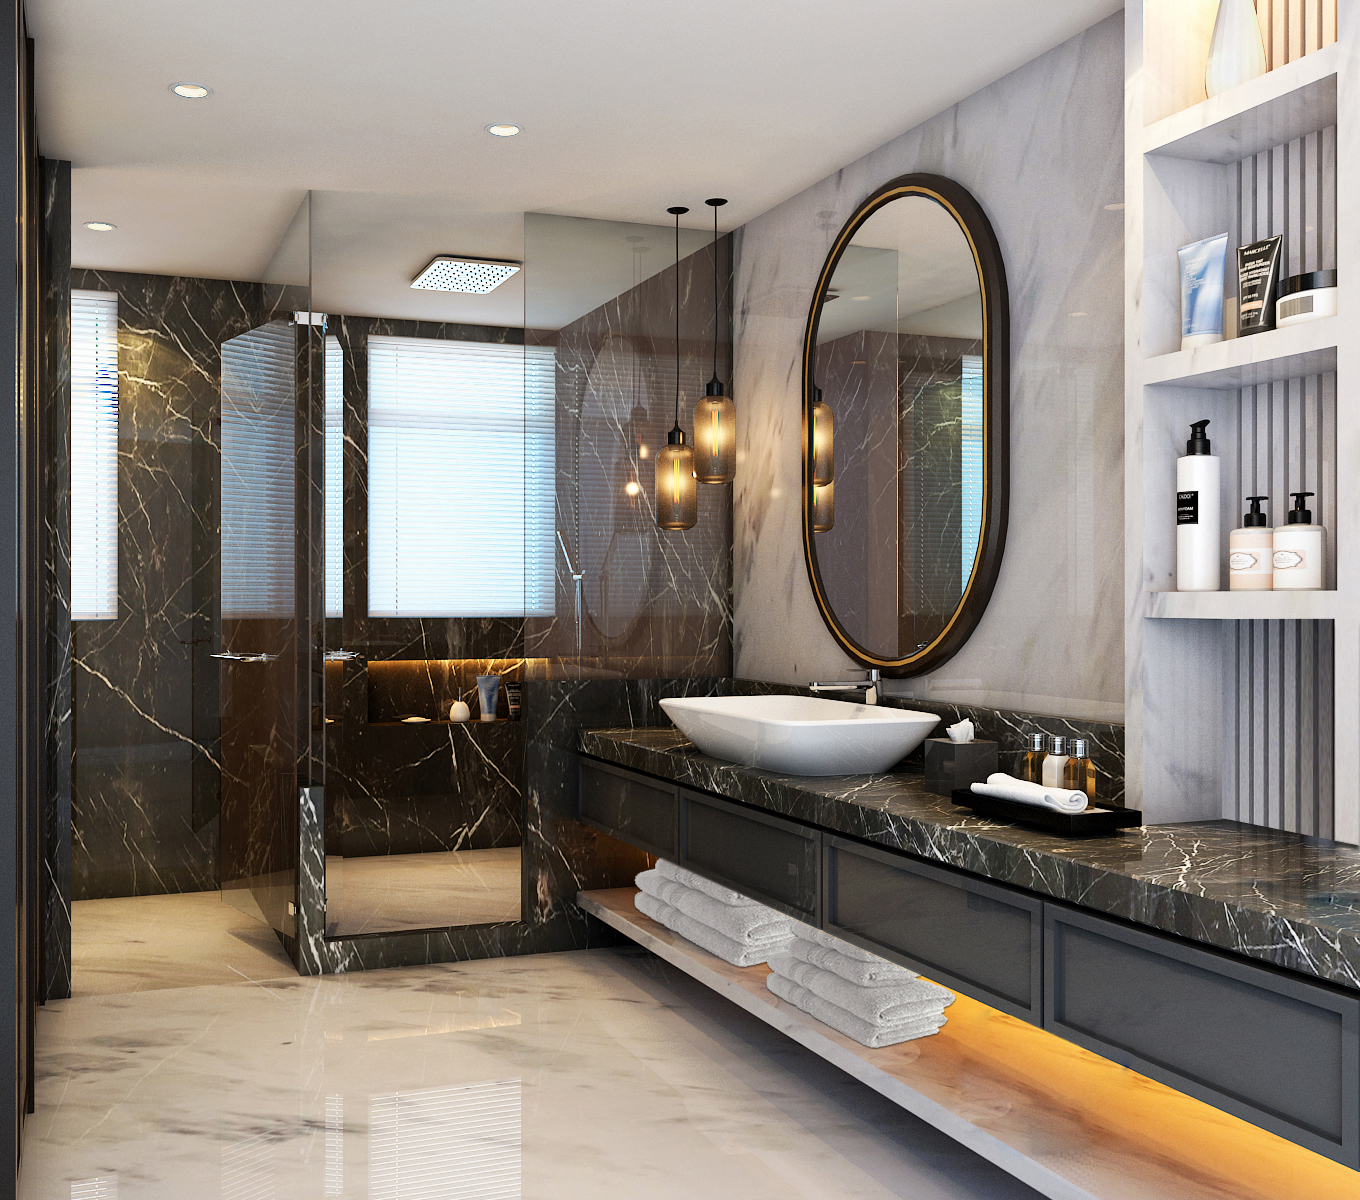 A Square Designs unveils exquisite bathrooms - ArchitectandinteriorsIndia